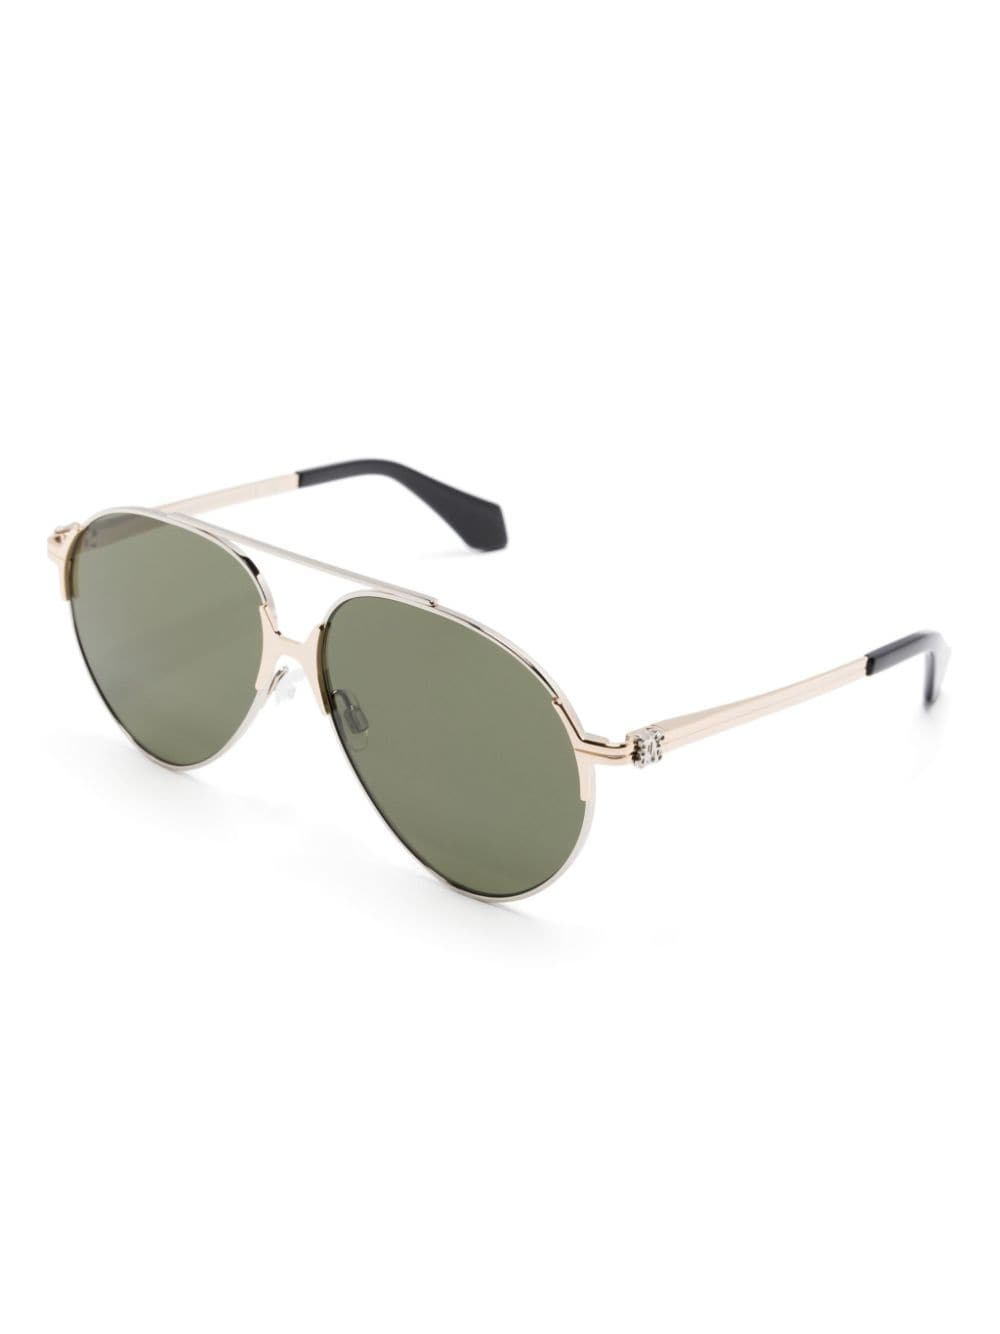 Elkton pilot-frame sunglasses - 2